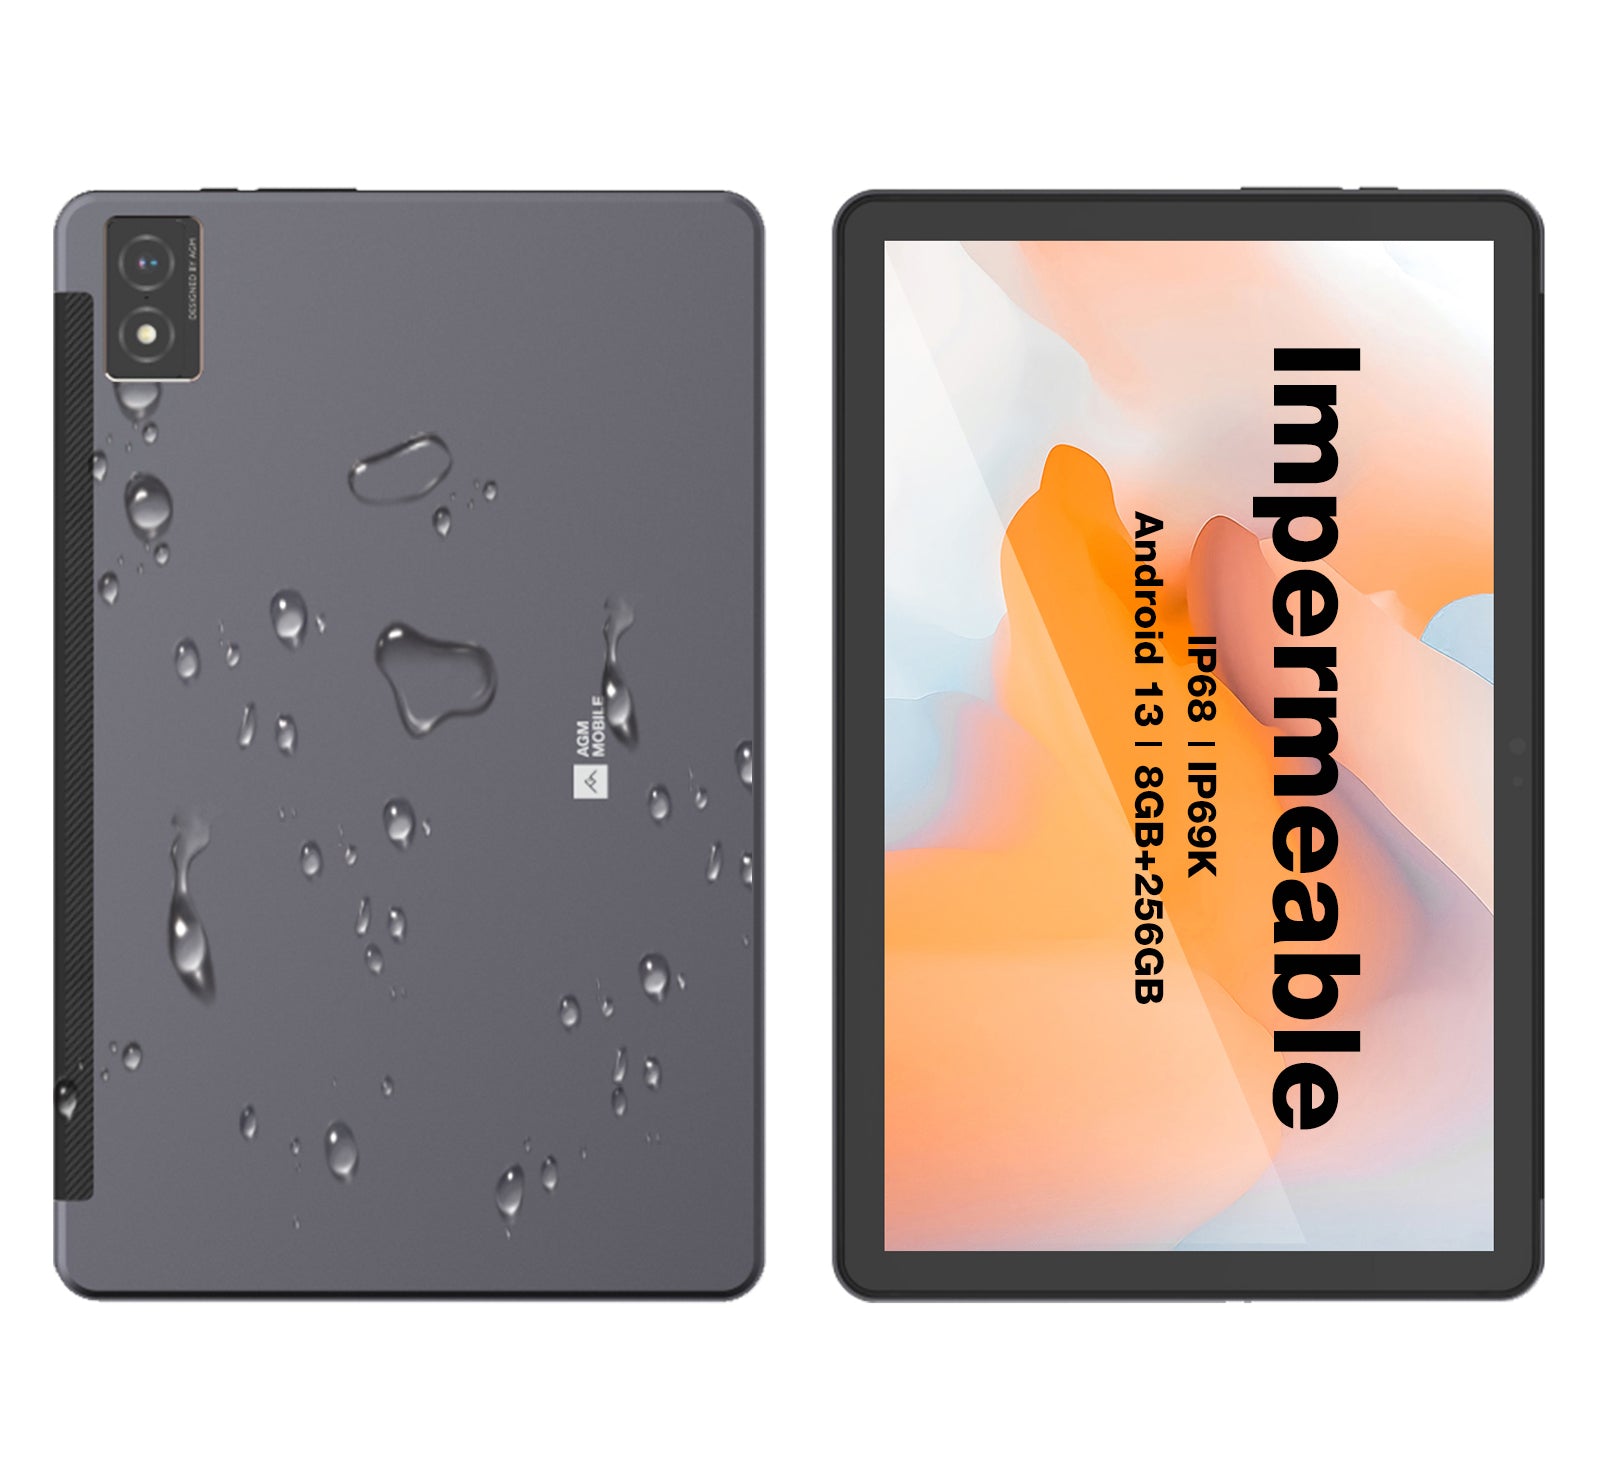 AGM PAD P1 | Tablet resistente 4G LTE | Potente chipset | Resistente al agua | Ligero | Gran pantalla 1200*2000 FHD | Batería grande | Android 13